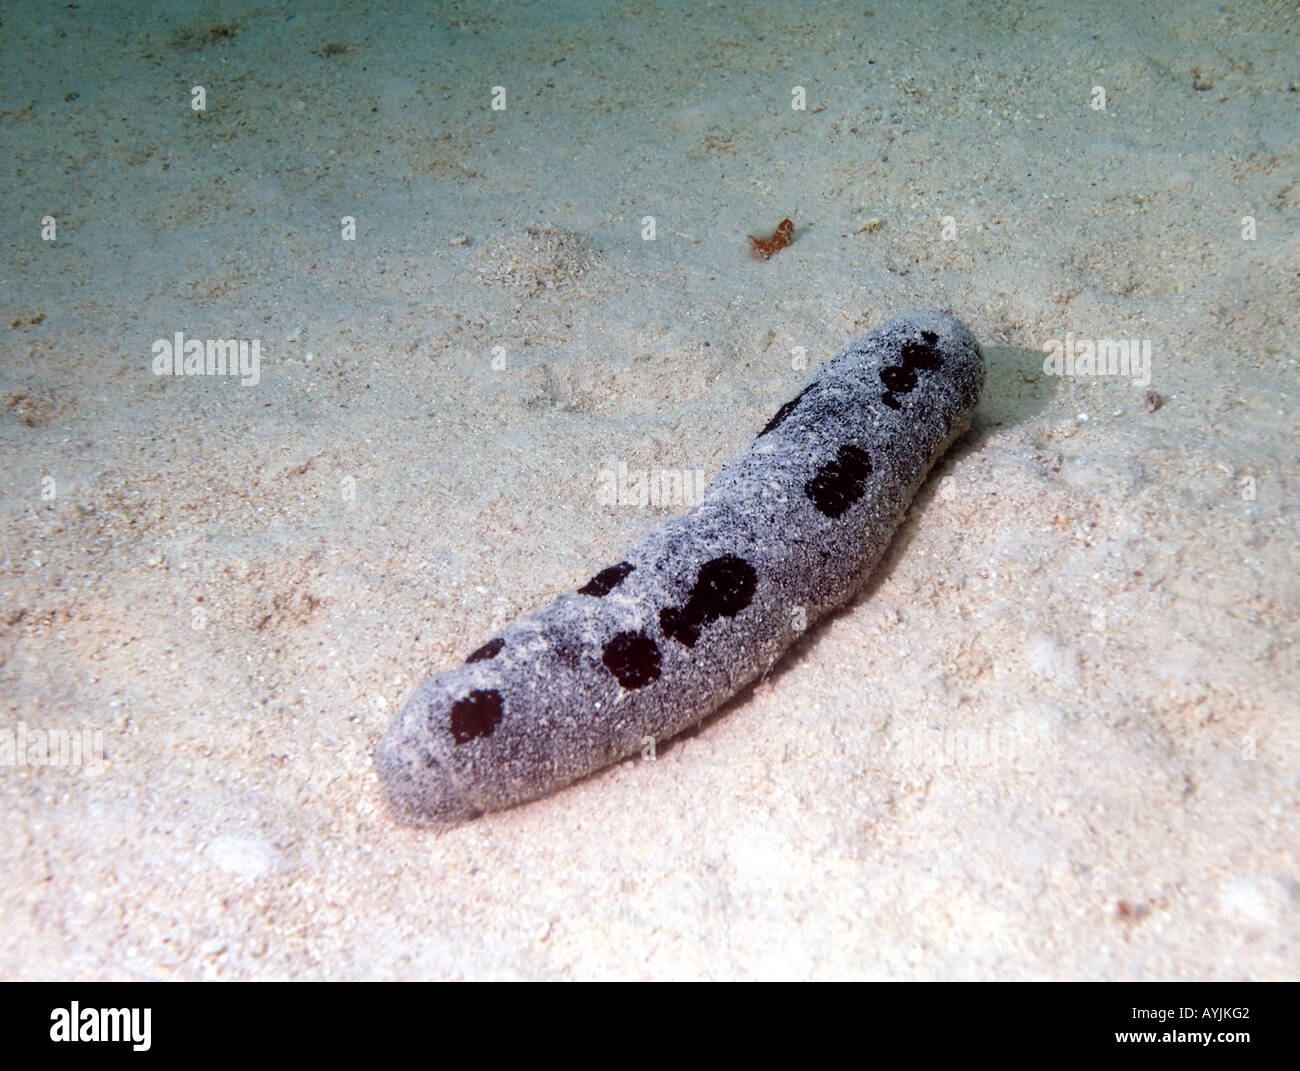 Sea cucumber Holothuria nobilis Stock Photo